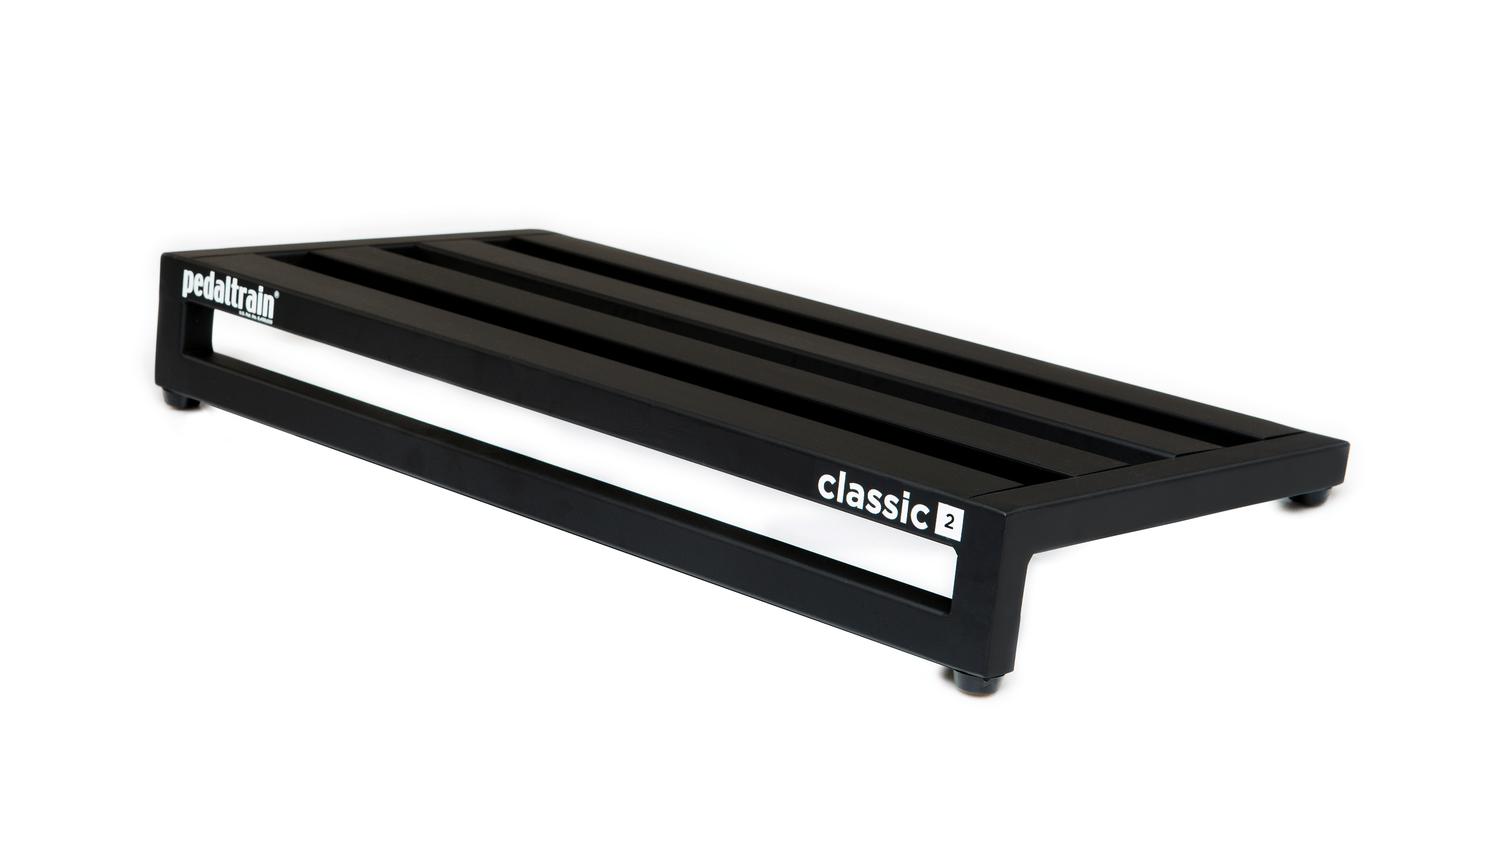 Pedaltrain Classic 2 Pedal Board W/ Soft Case